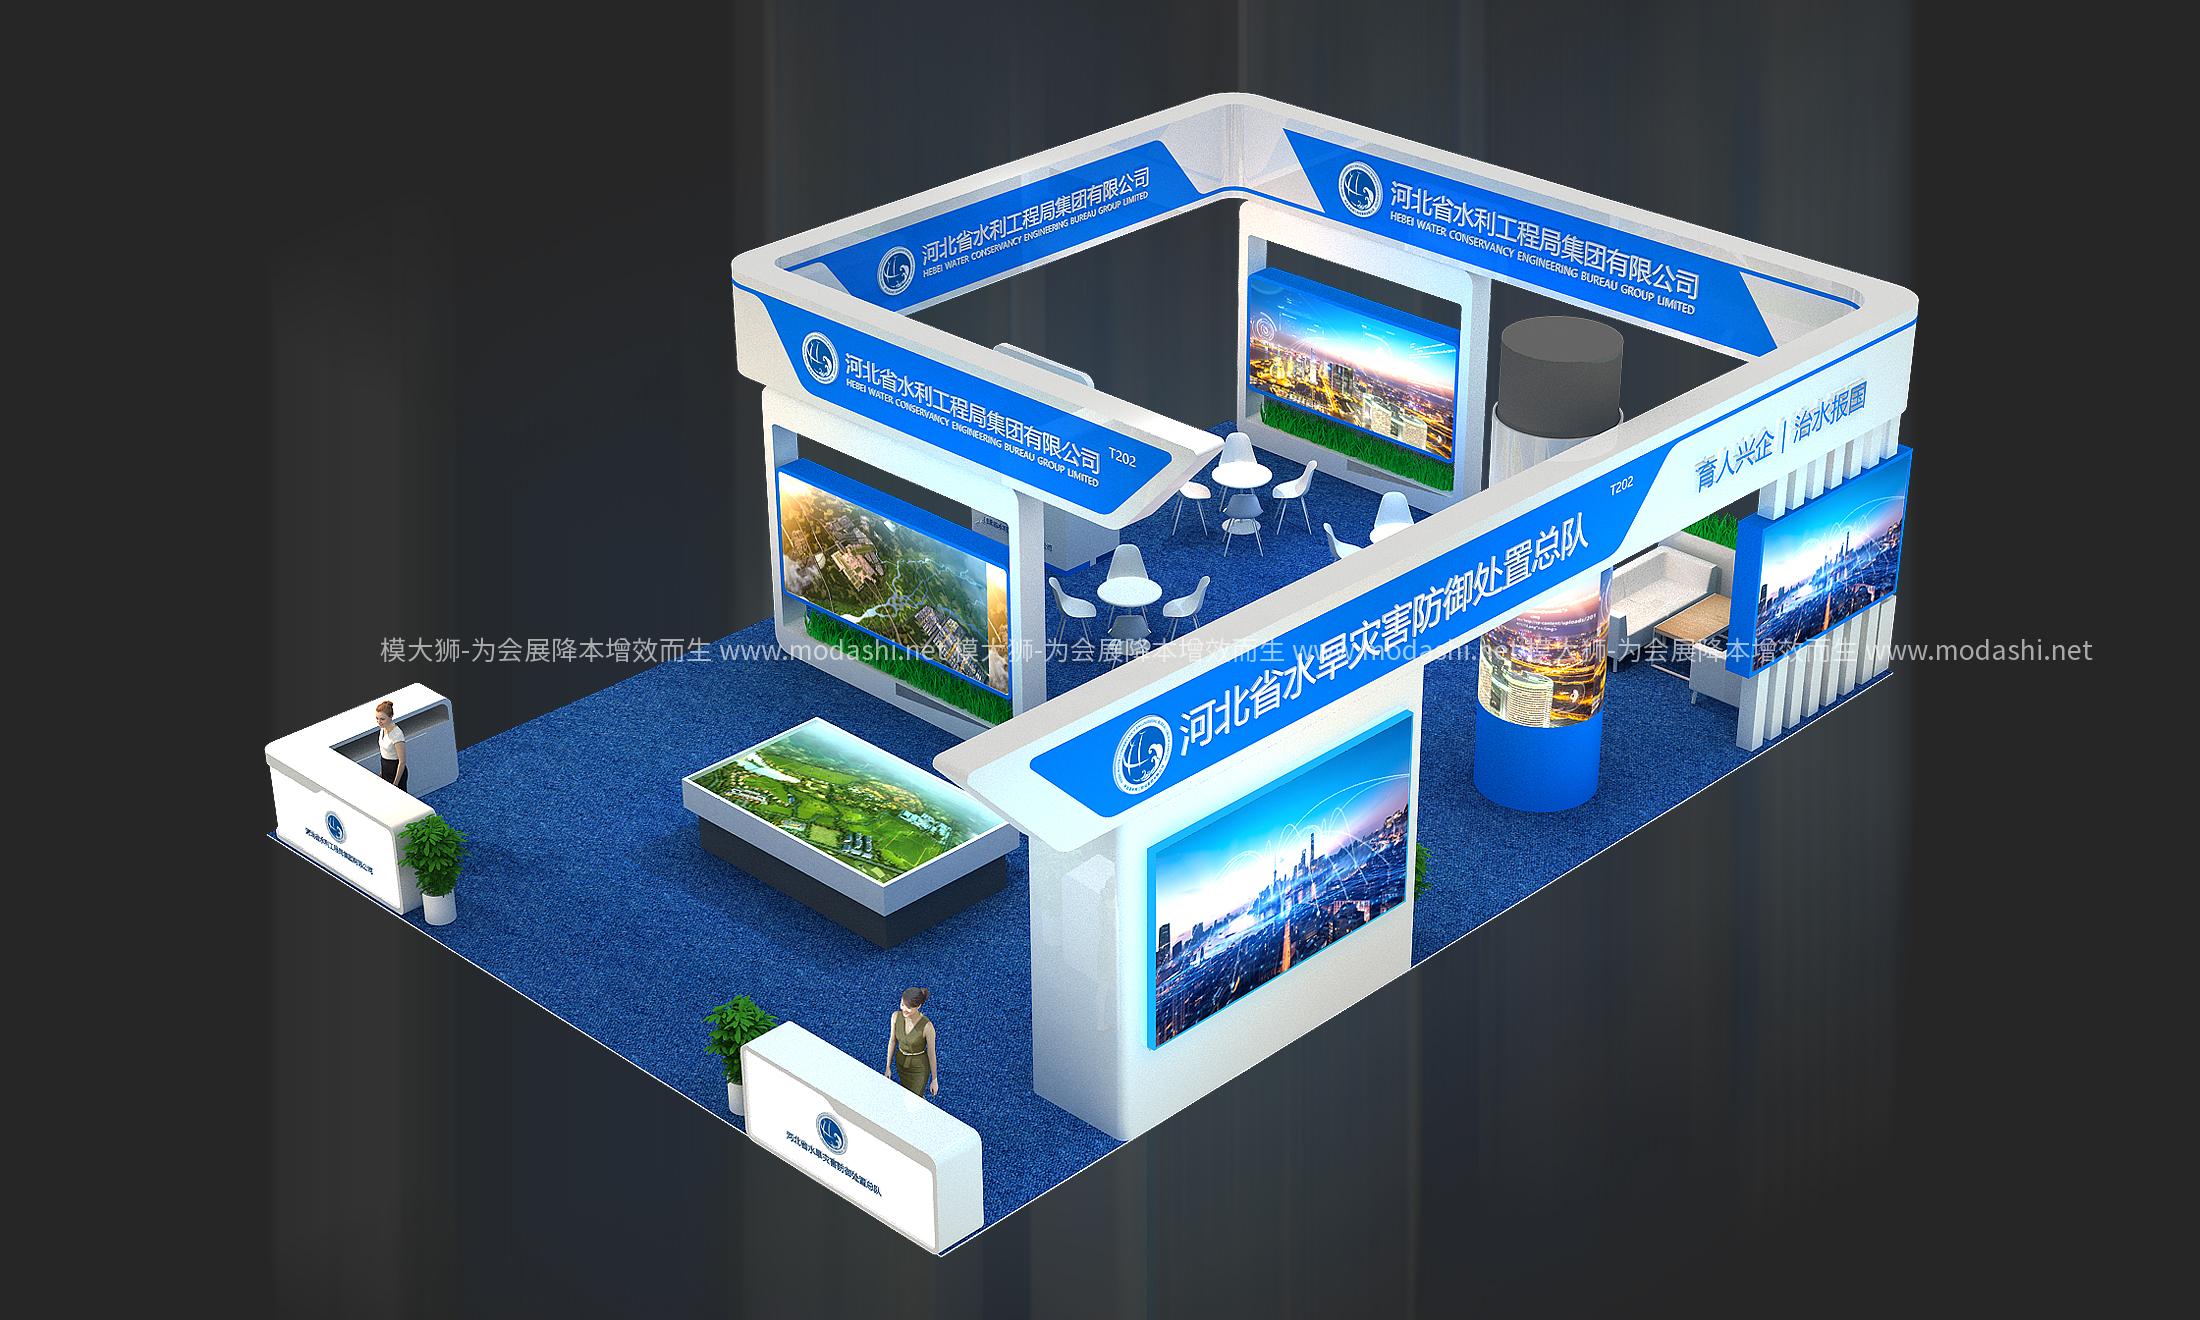 河北省水利工程局展示展台模型